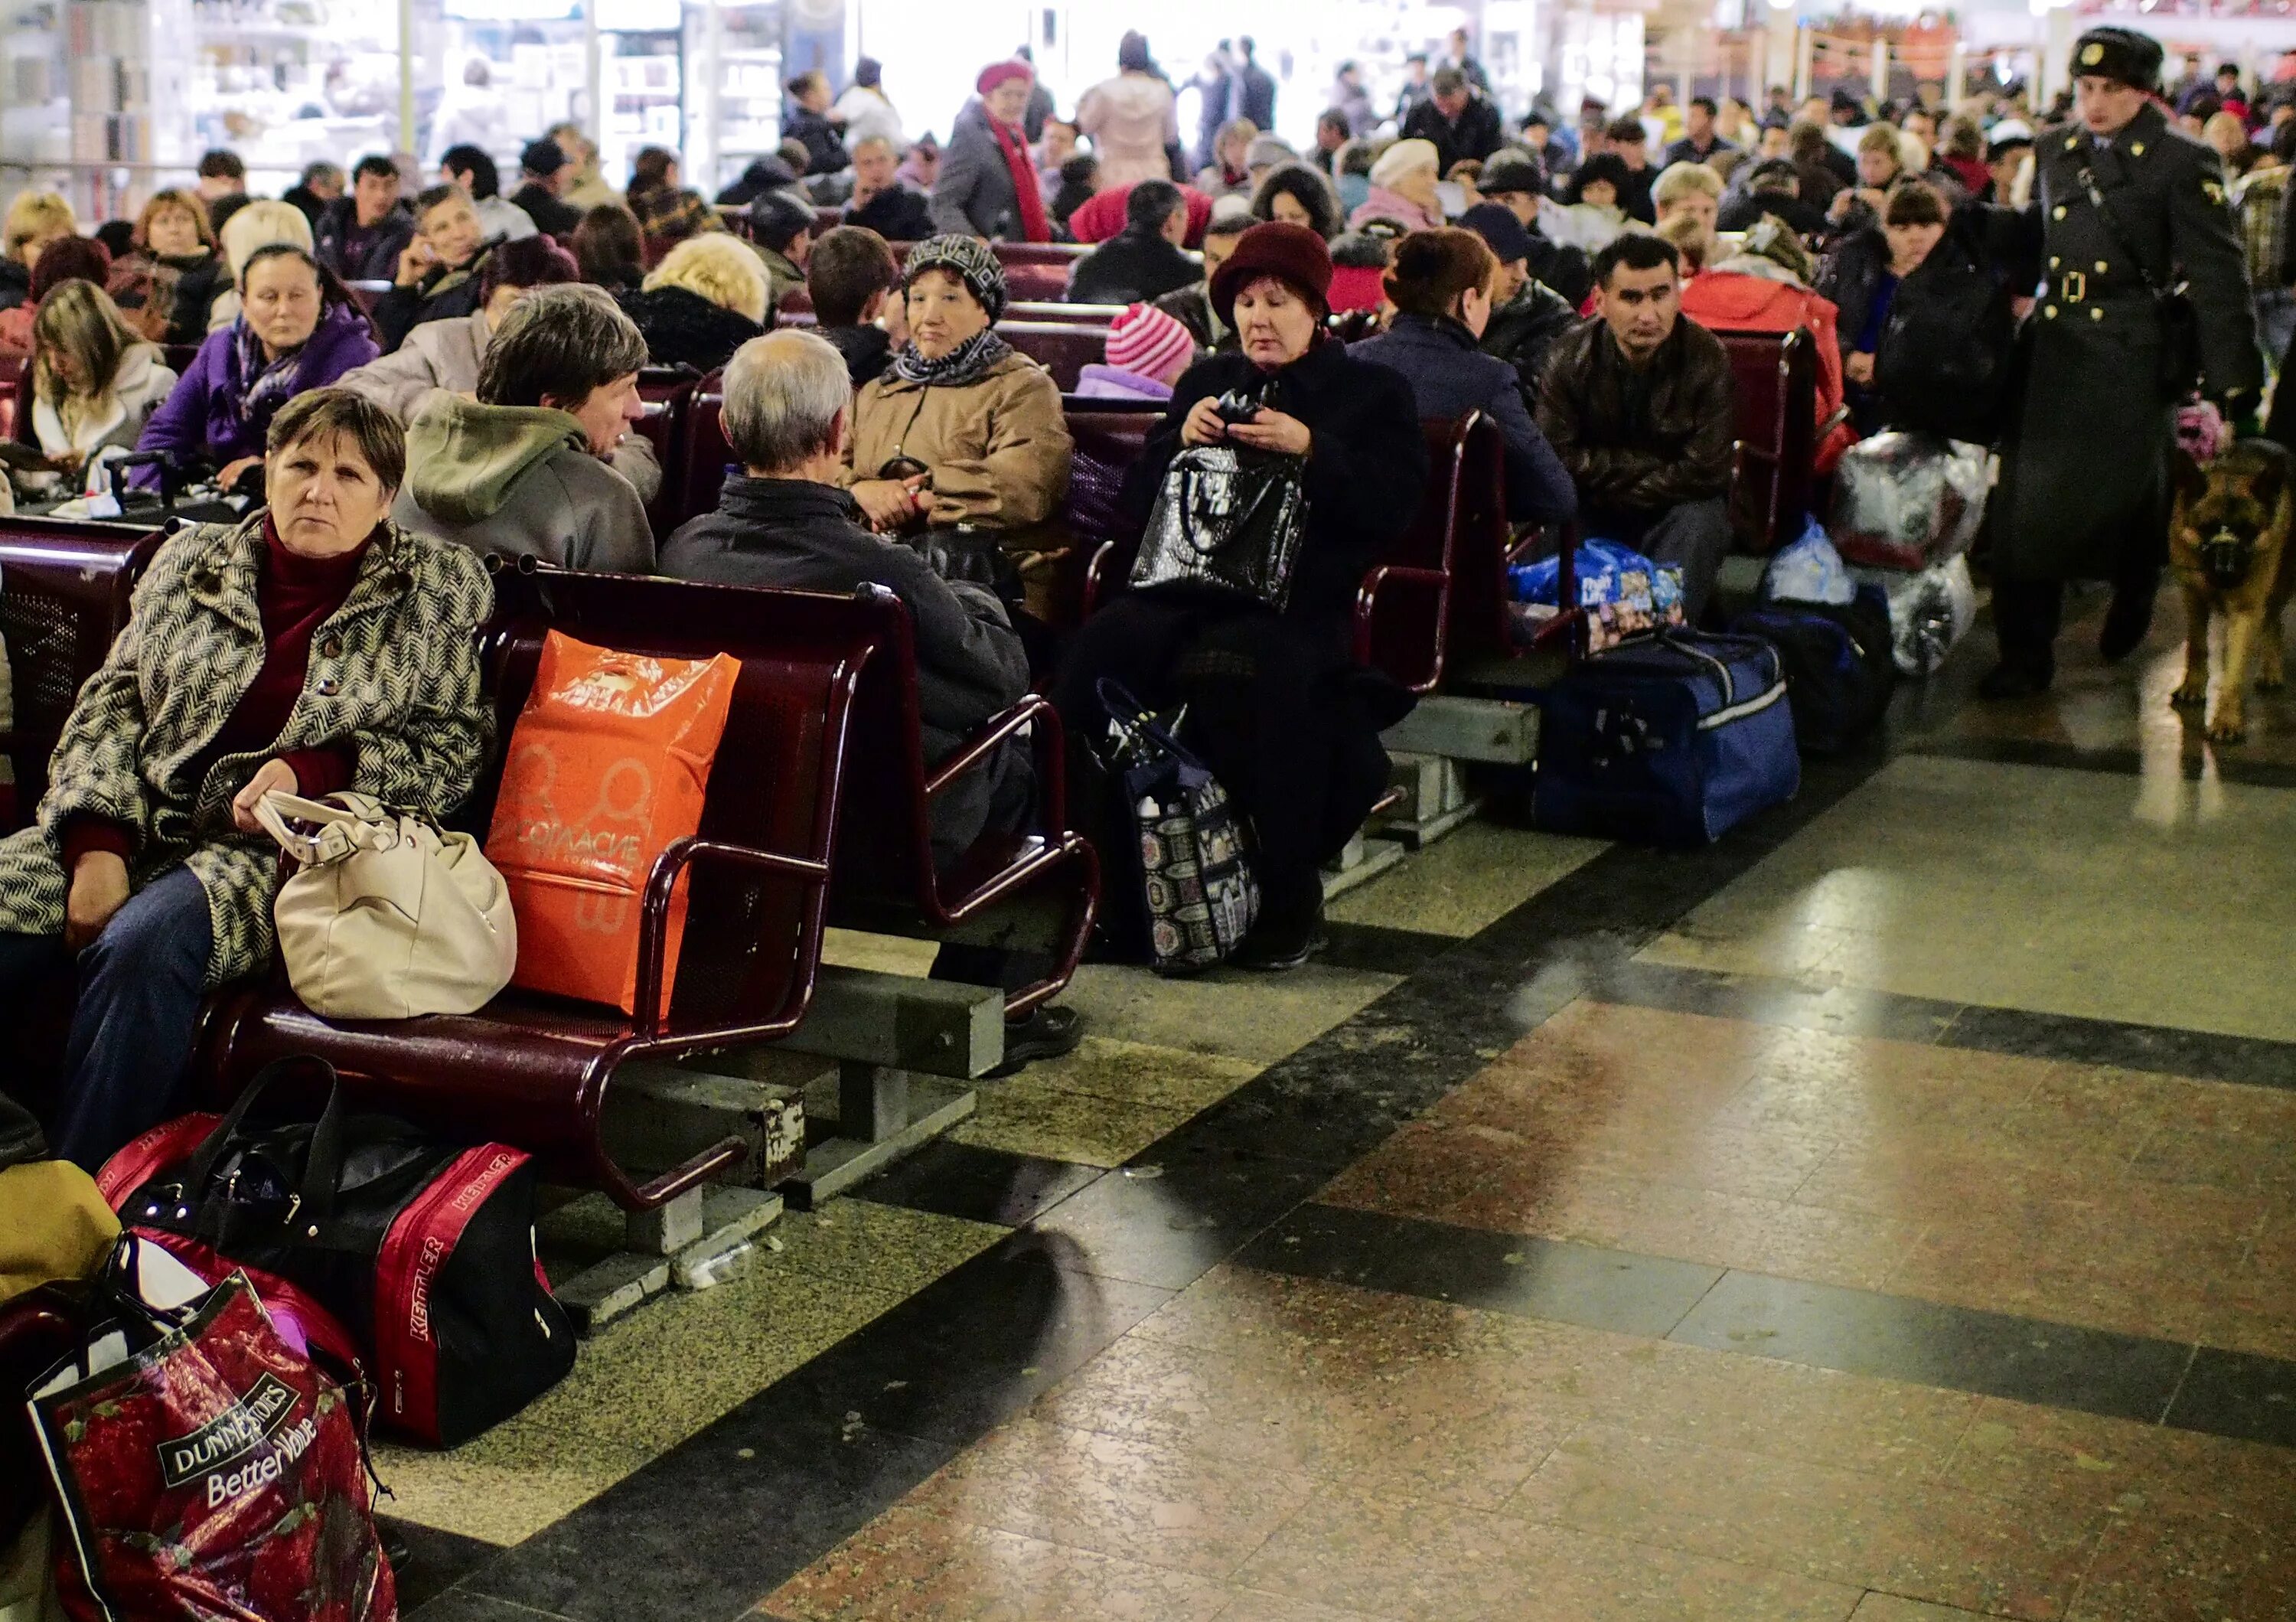 Казанский вокзал зал ожидания. Люди на вокзале. Пассажиры в зале ожидания. Залы ожидания на вокзале.